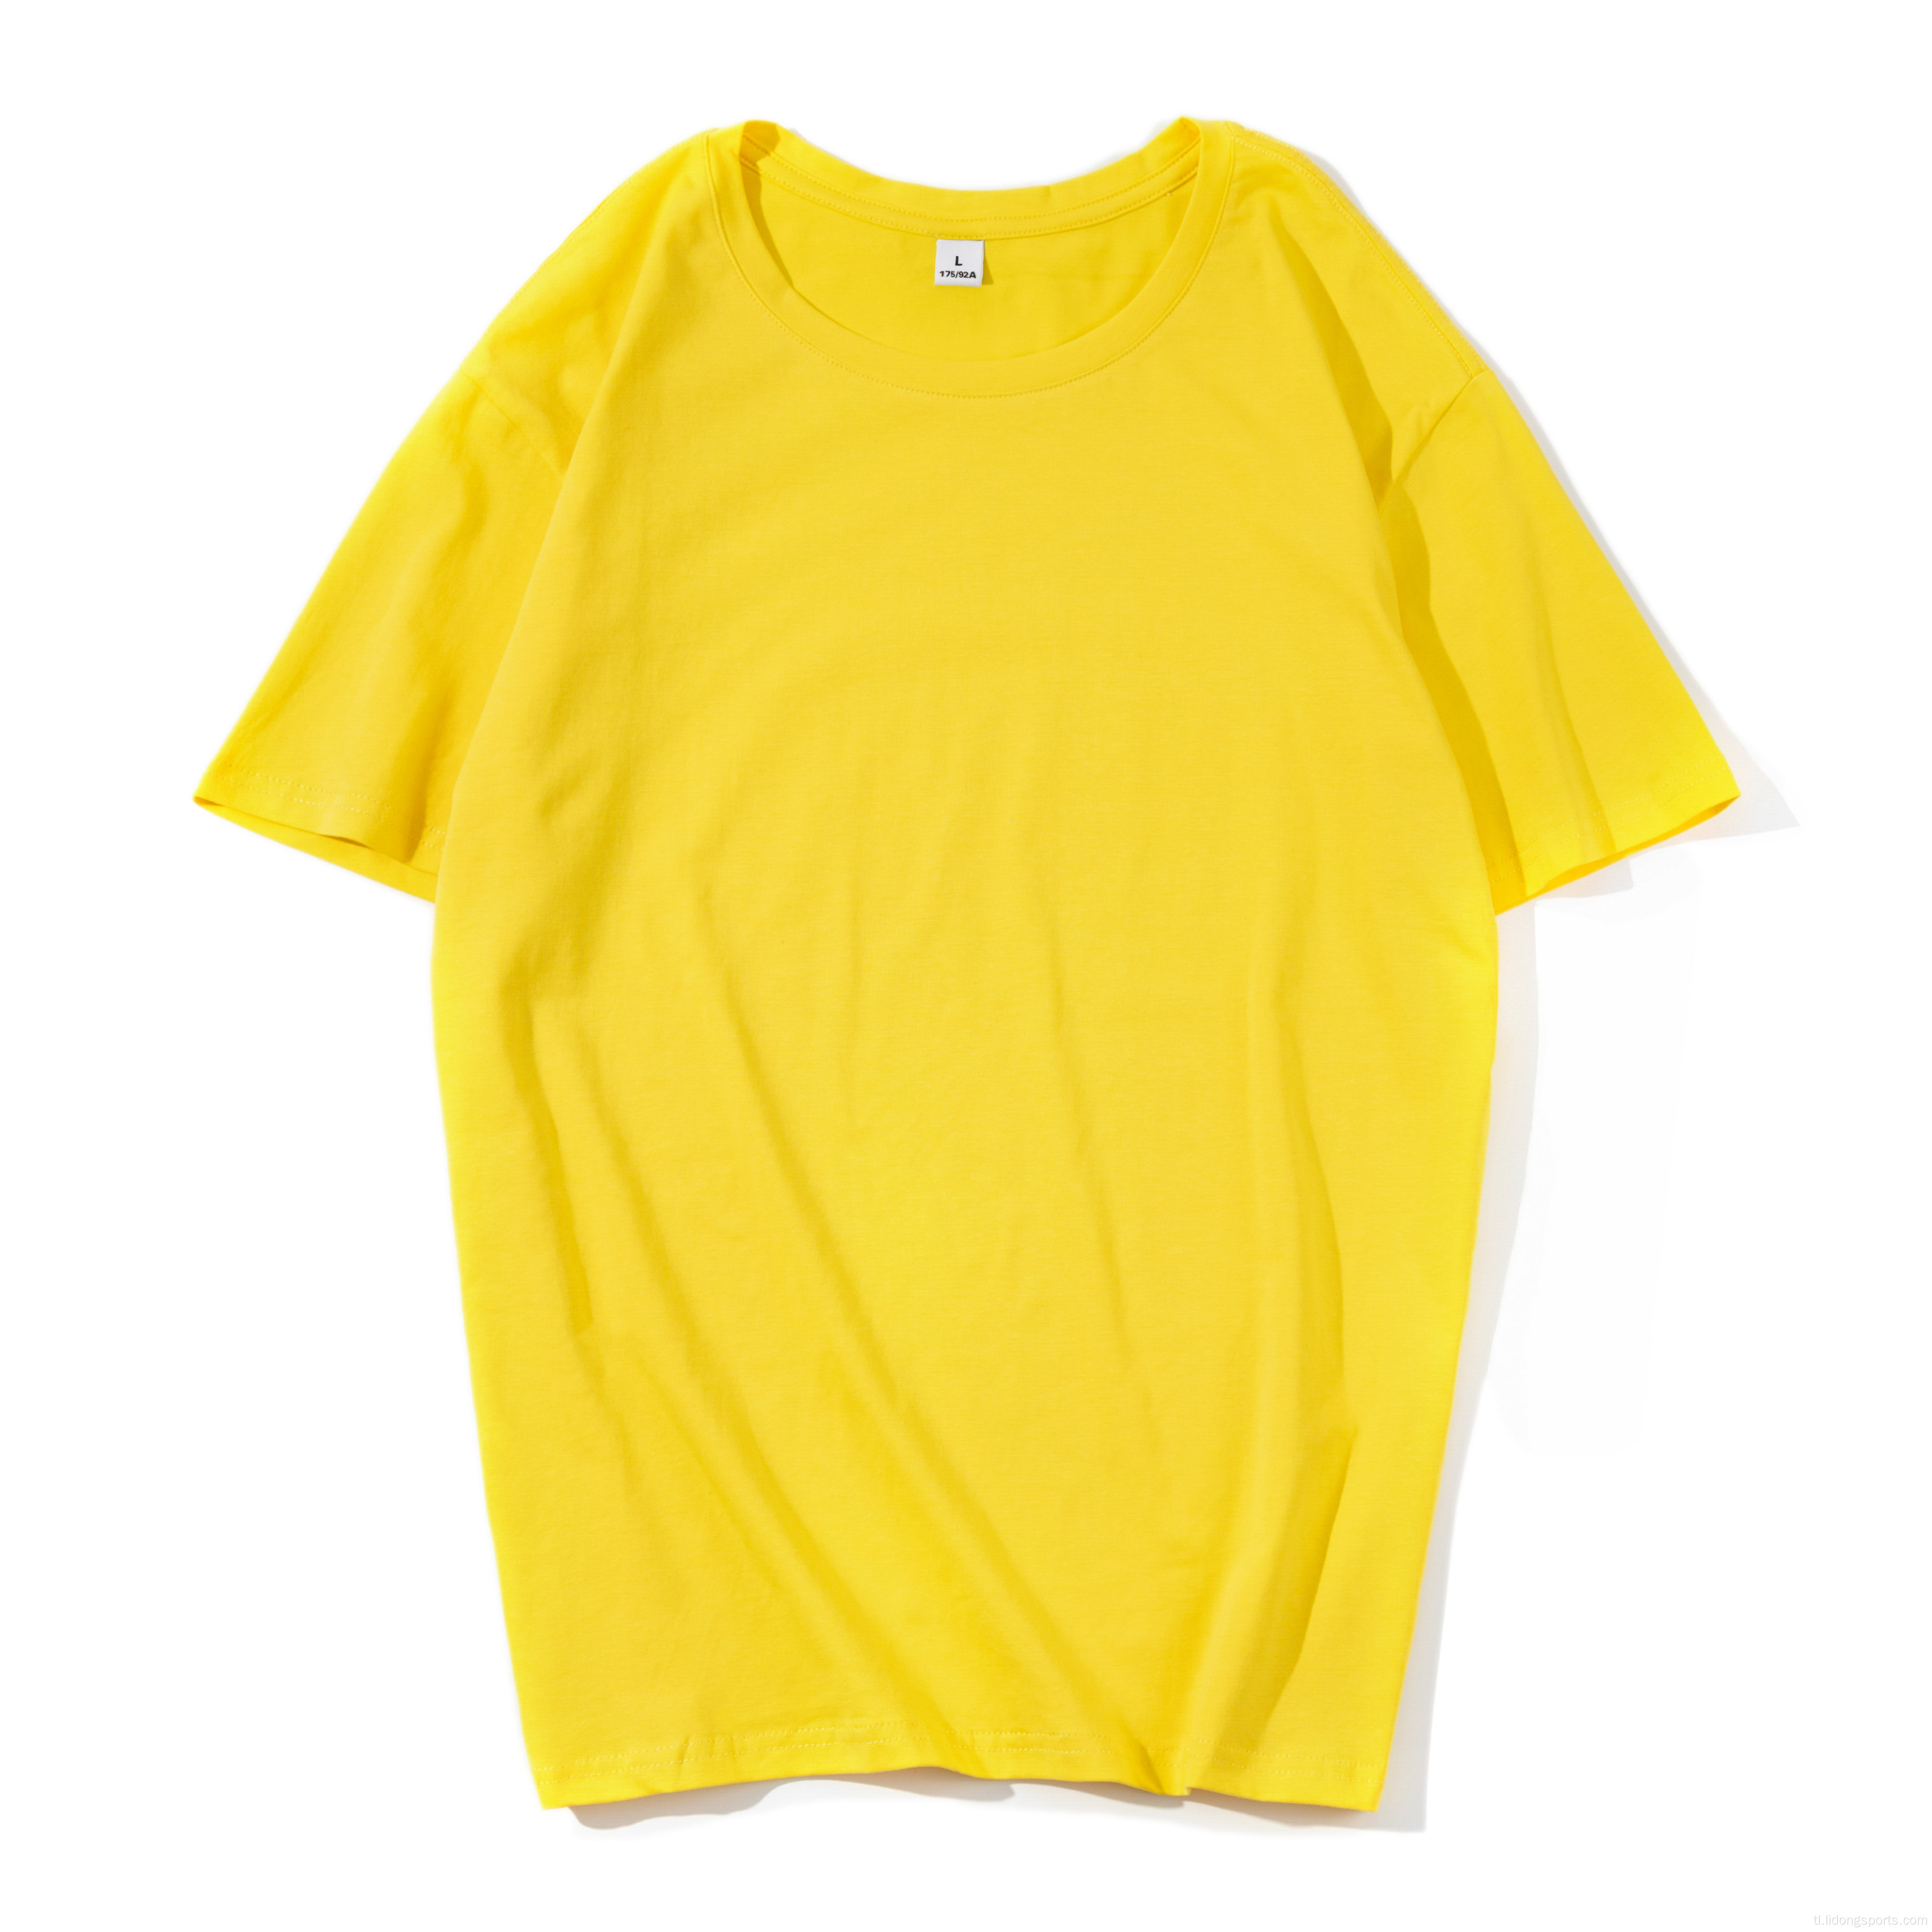 Unisex plain 100% cotton women men&#39;s o-neck t-shirt